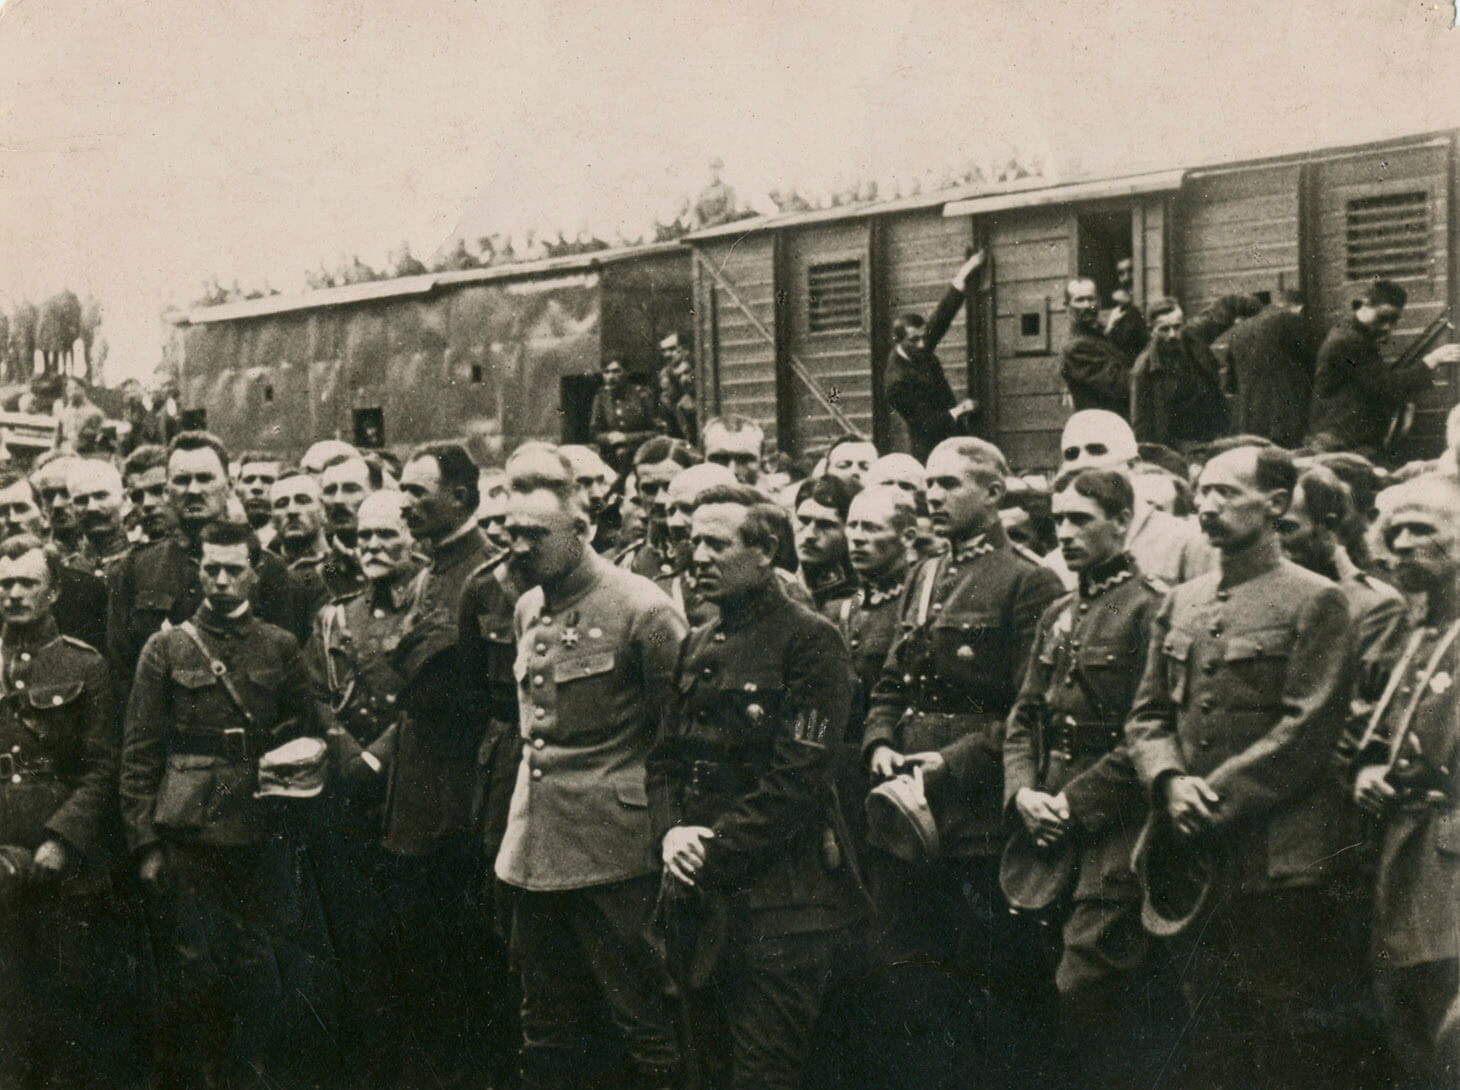 Czarno-biała fotografia grupowa tłumu żołnierzy na tle składu kolejowego. Na pierwszym planie, w centrum kadru znajdują się Naczelny Wódz Józef Piłsudski oraz . Ubrany jest w jasną kurtkę mundurową i ciemne spodnie, bez nakrycia głowy.o oraz drugi od lewej: ataman Symon Petlura w ciemnym mundurze. Za nimi stoją oficerowie. Wszyscy zebrani pokazani są  bez nakryć głowy, które trzymają w swobodnie opuszczonych, złączonych przed sobą rękach. 

